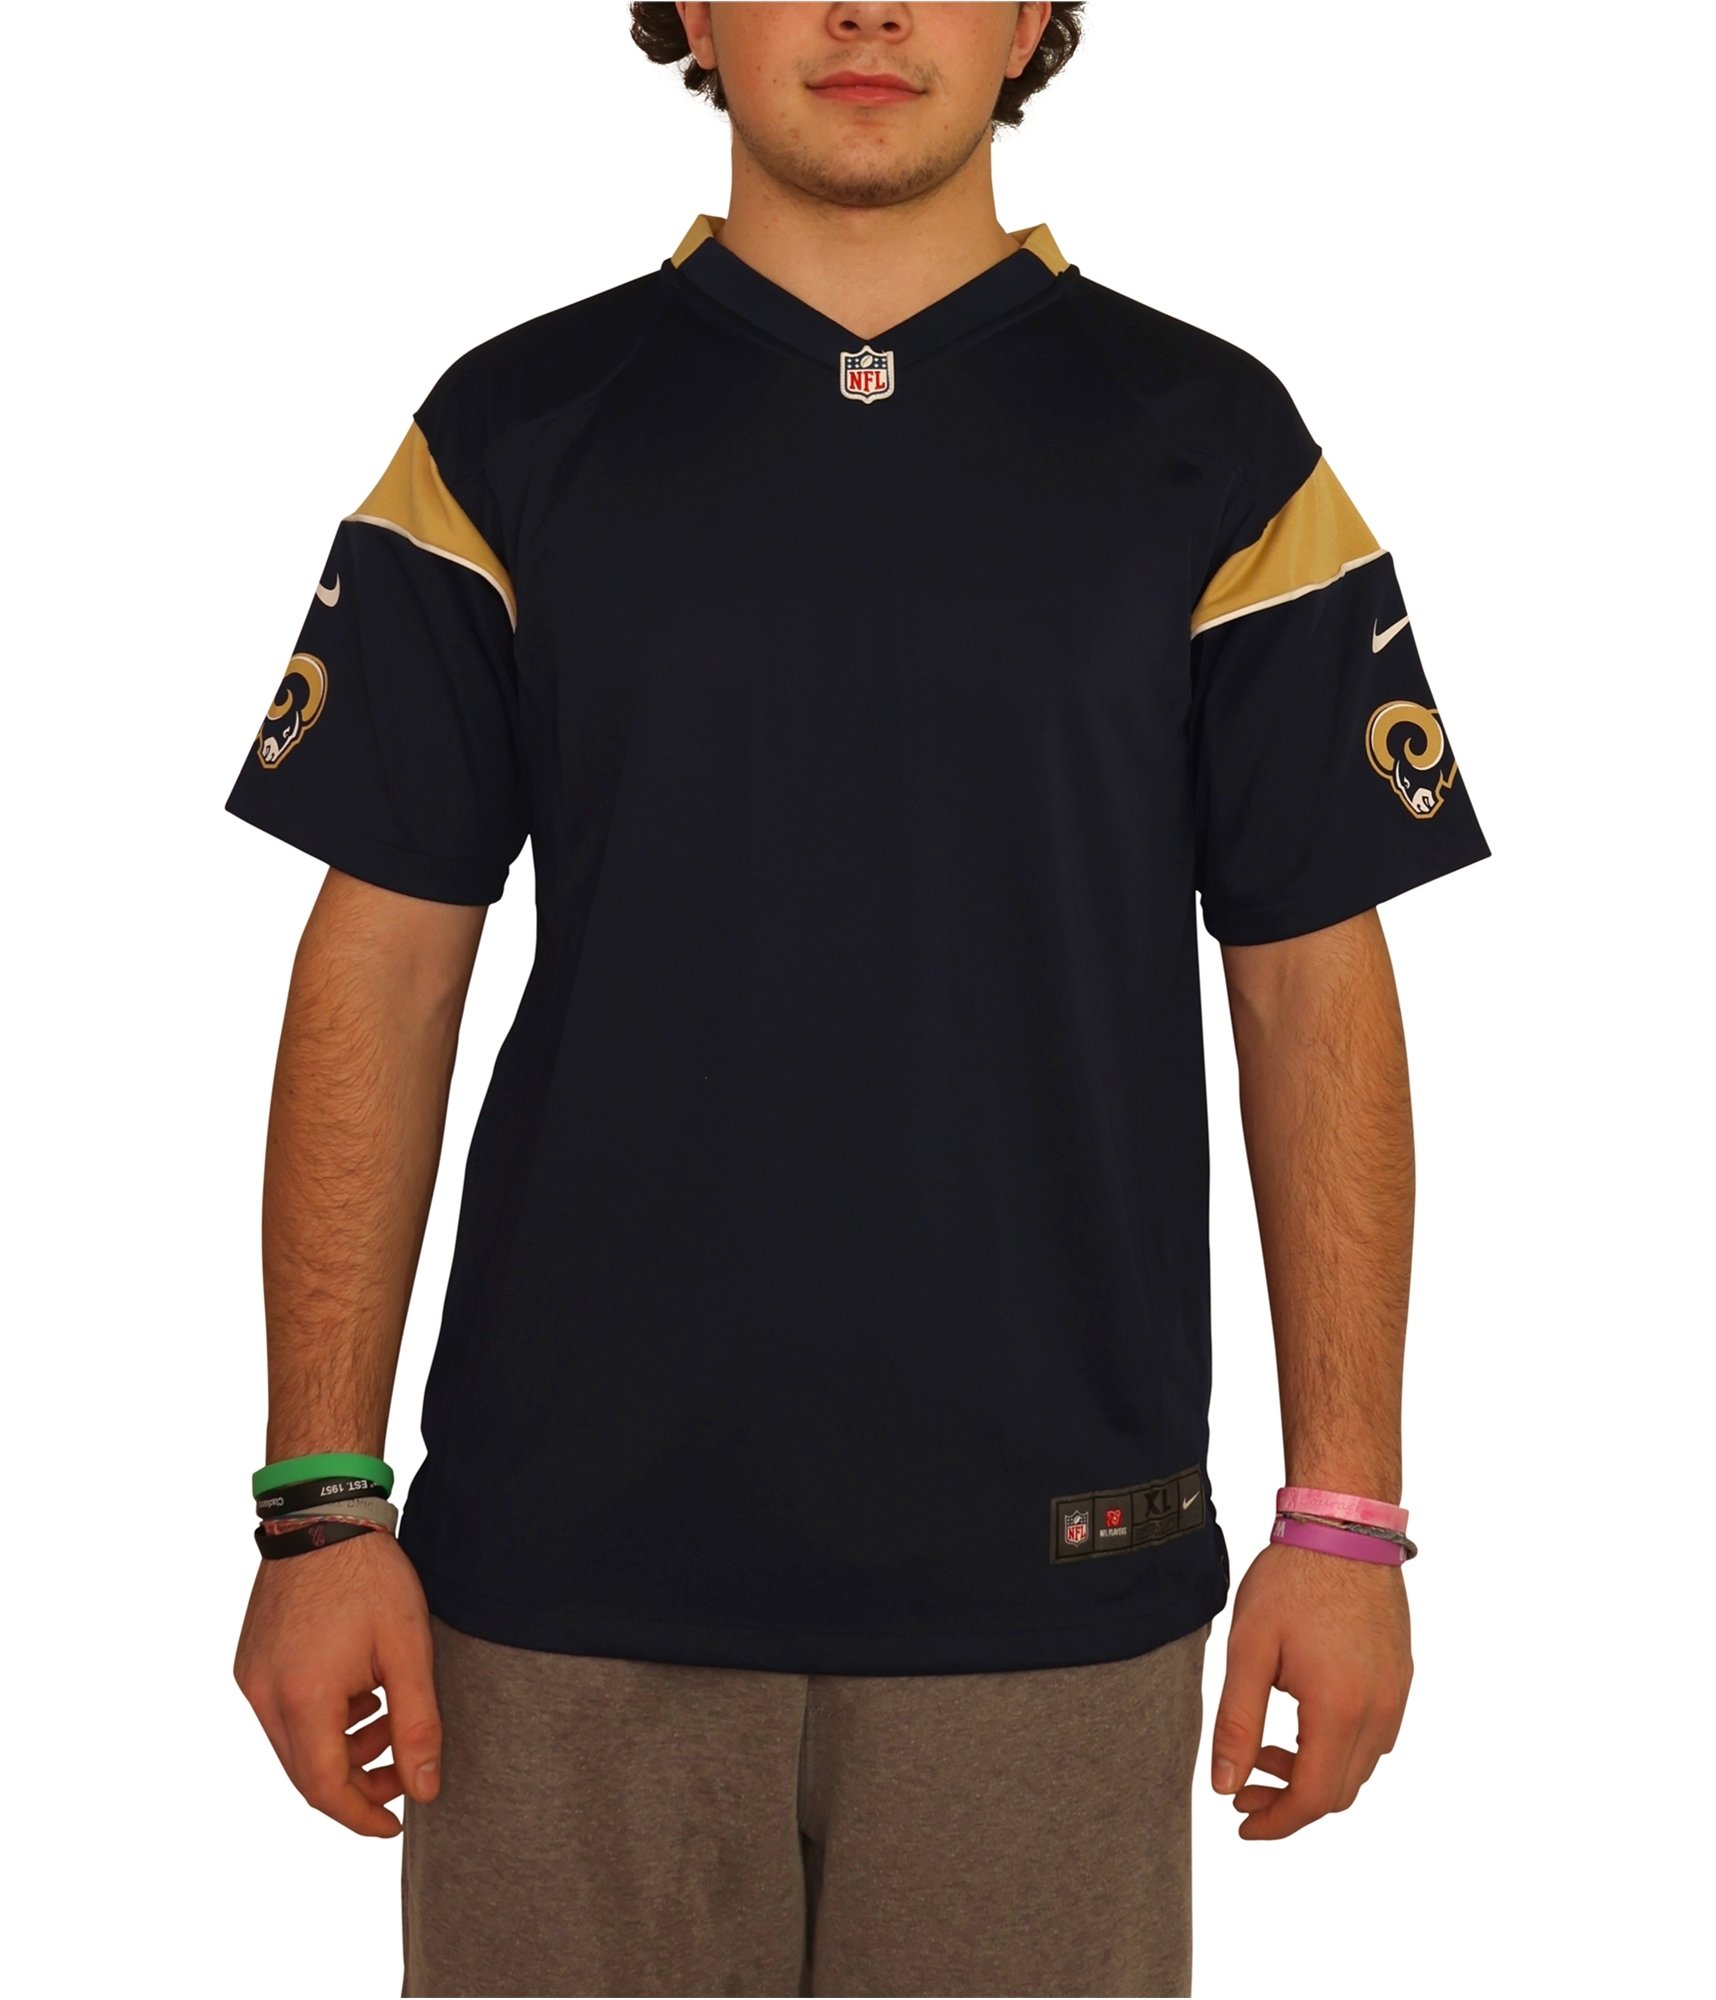 Buy a Boys Nike Rams On Field Custom Jersey Online |